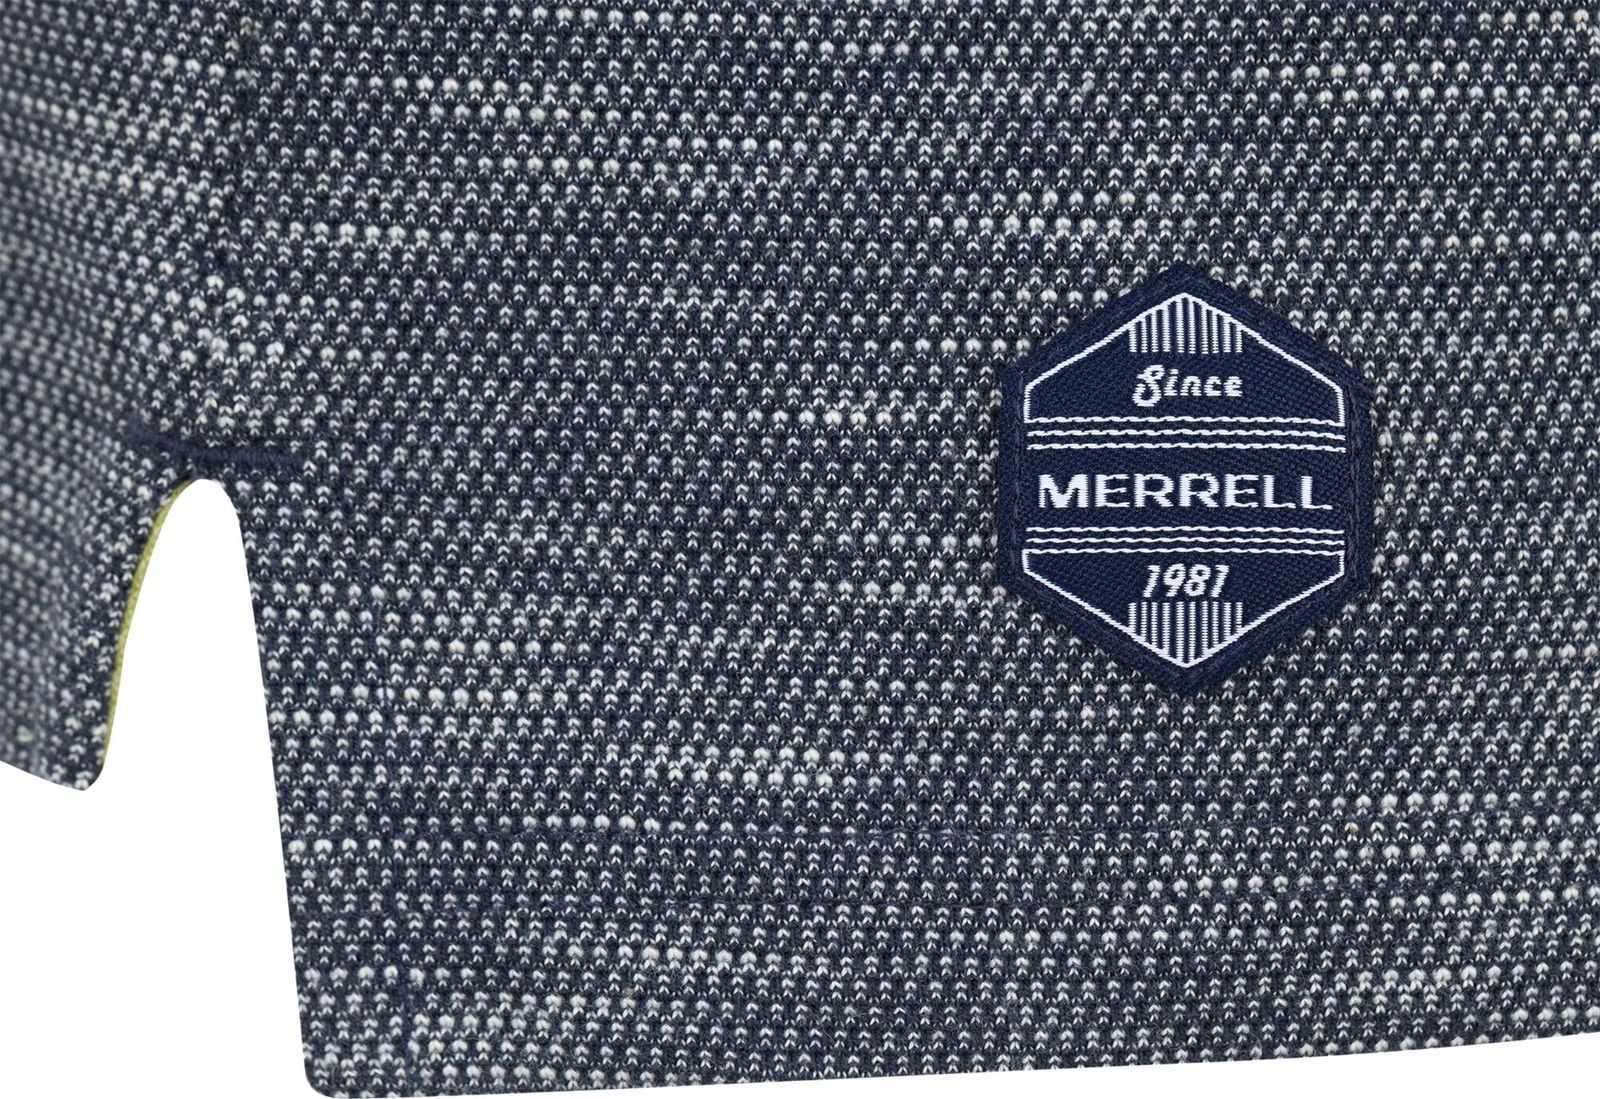   Merrell Men's Polo, : -. S17AMRPOM01-5M.  52